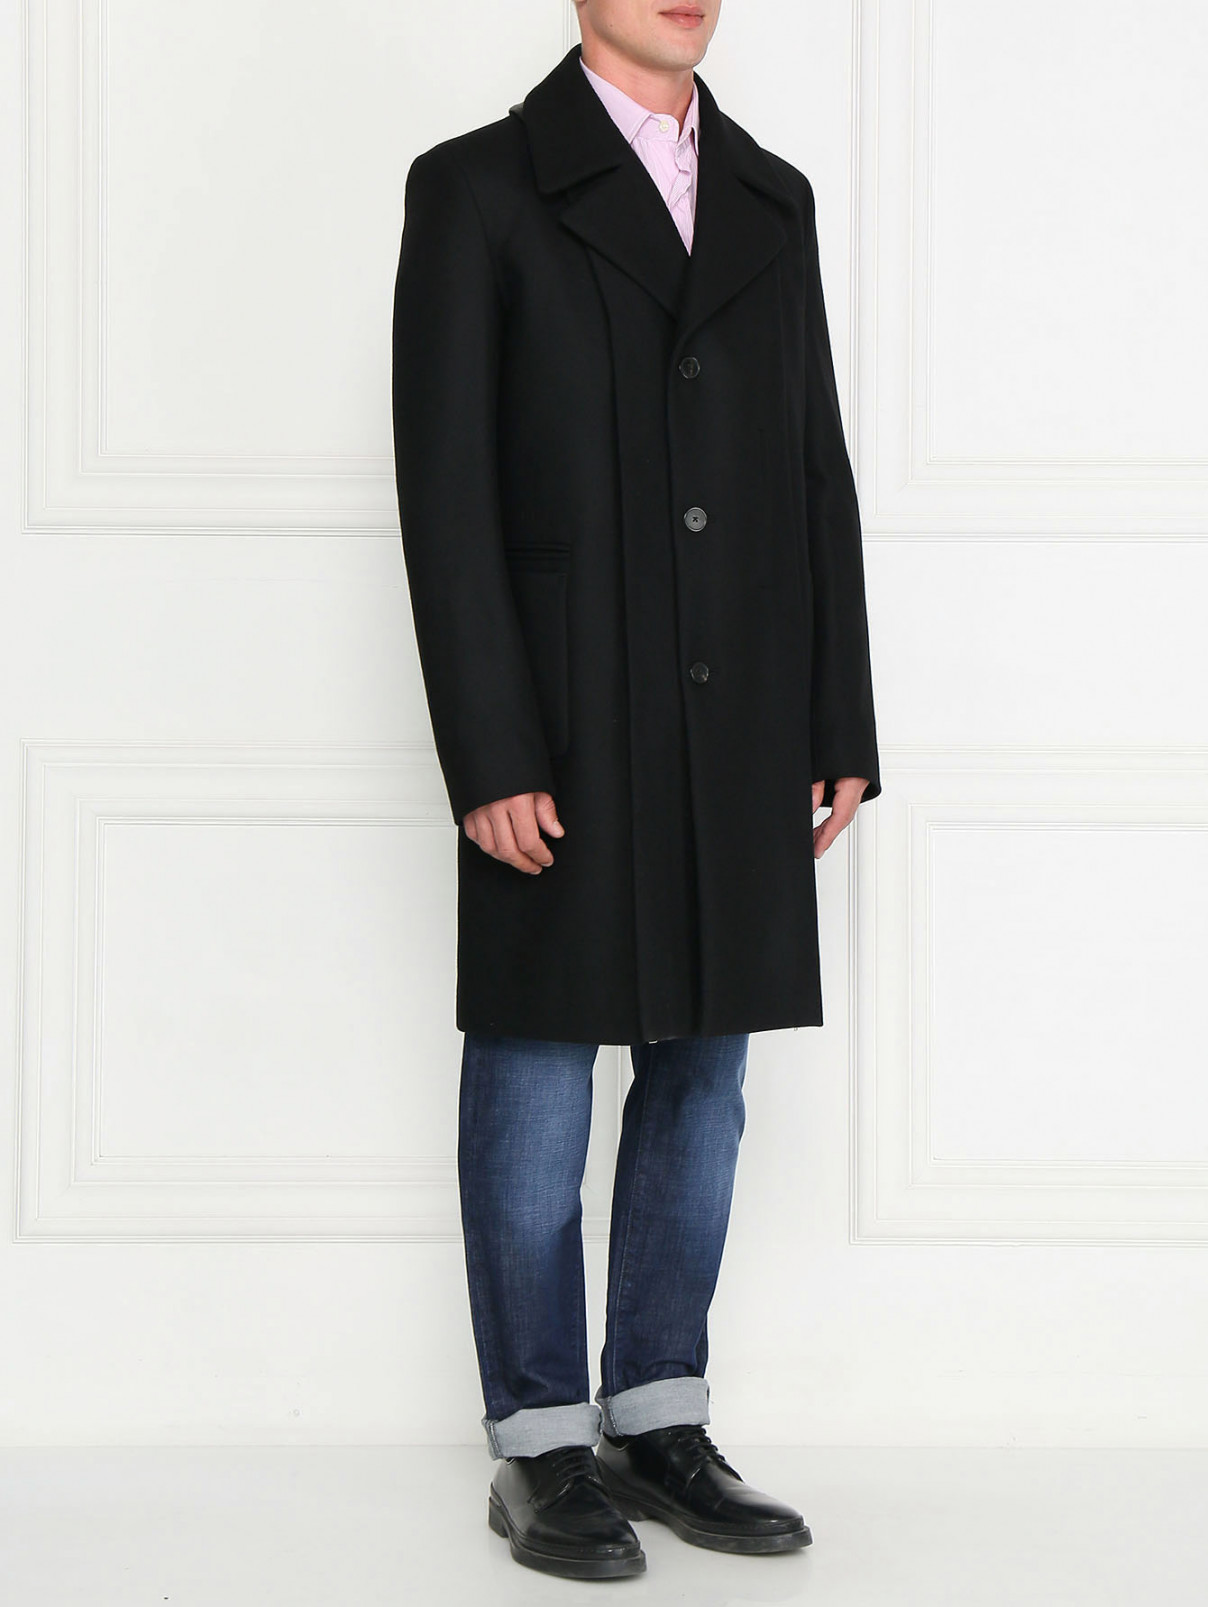 Пальто двубортное из шерсти Jean Paul Gaultier  –  Модель Общий вид  – Цвет:  Черный